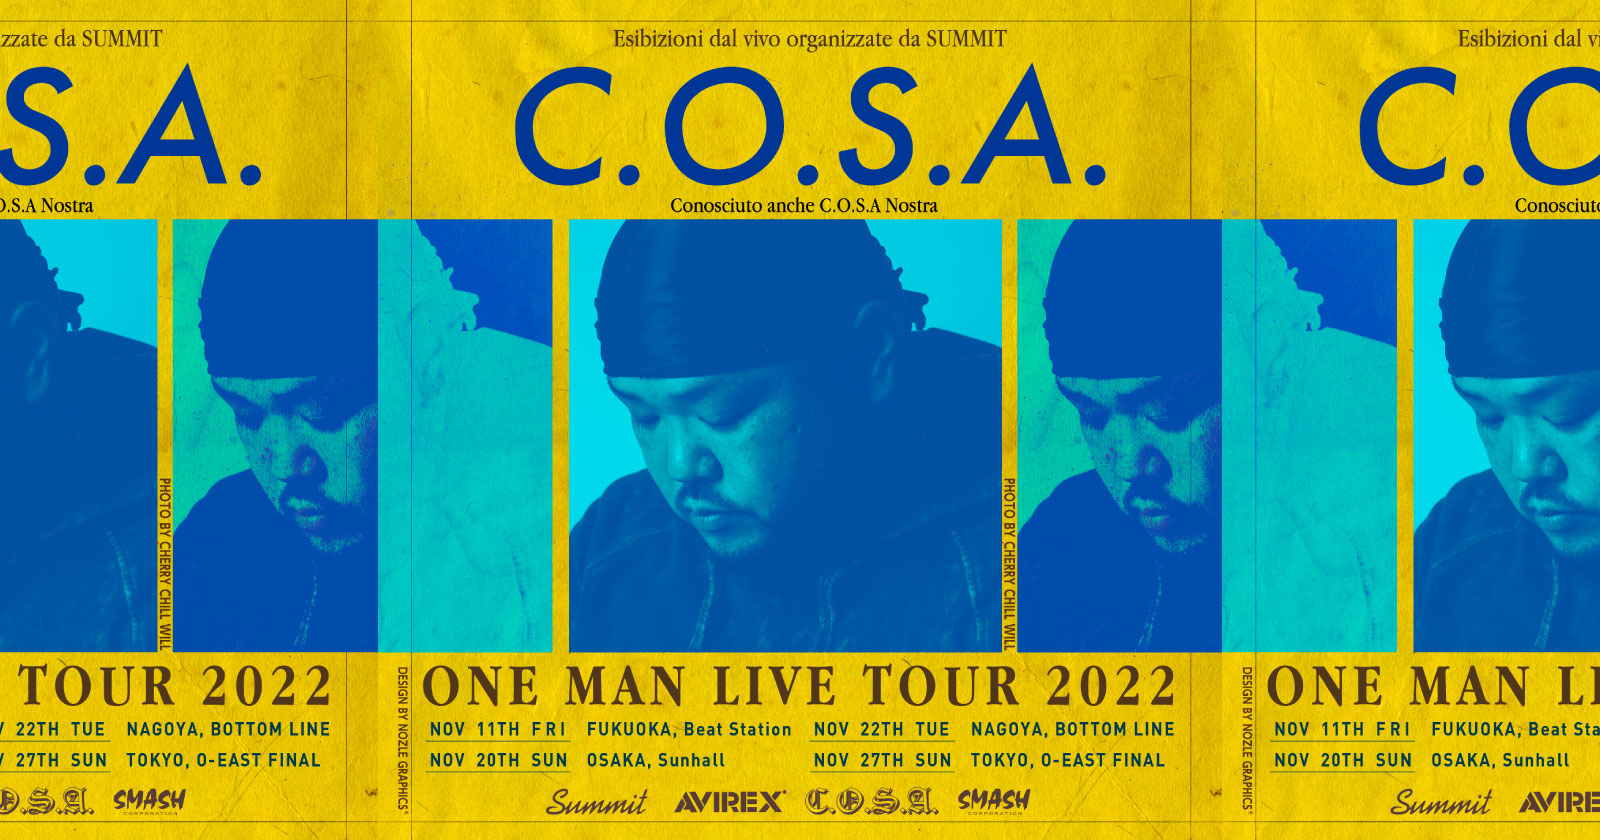 C.O.S.A. ONE MAN LIVE TOUR 2022